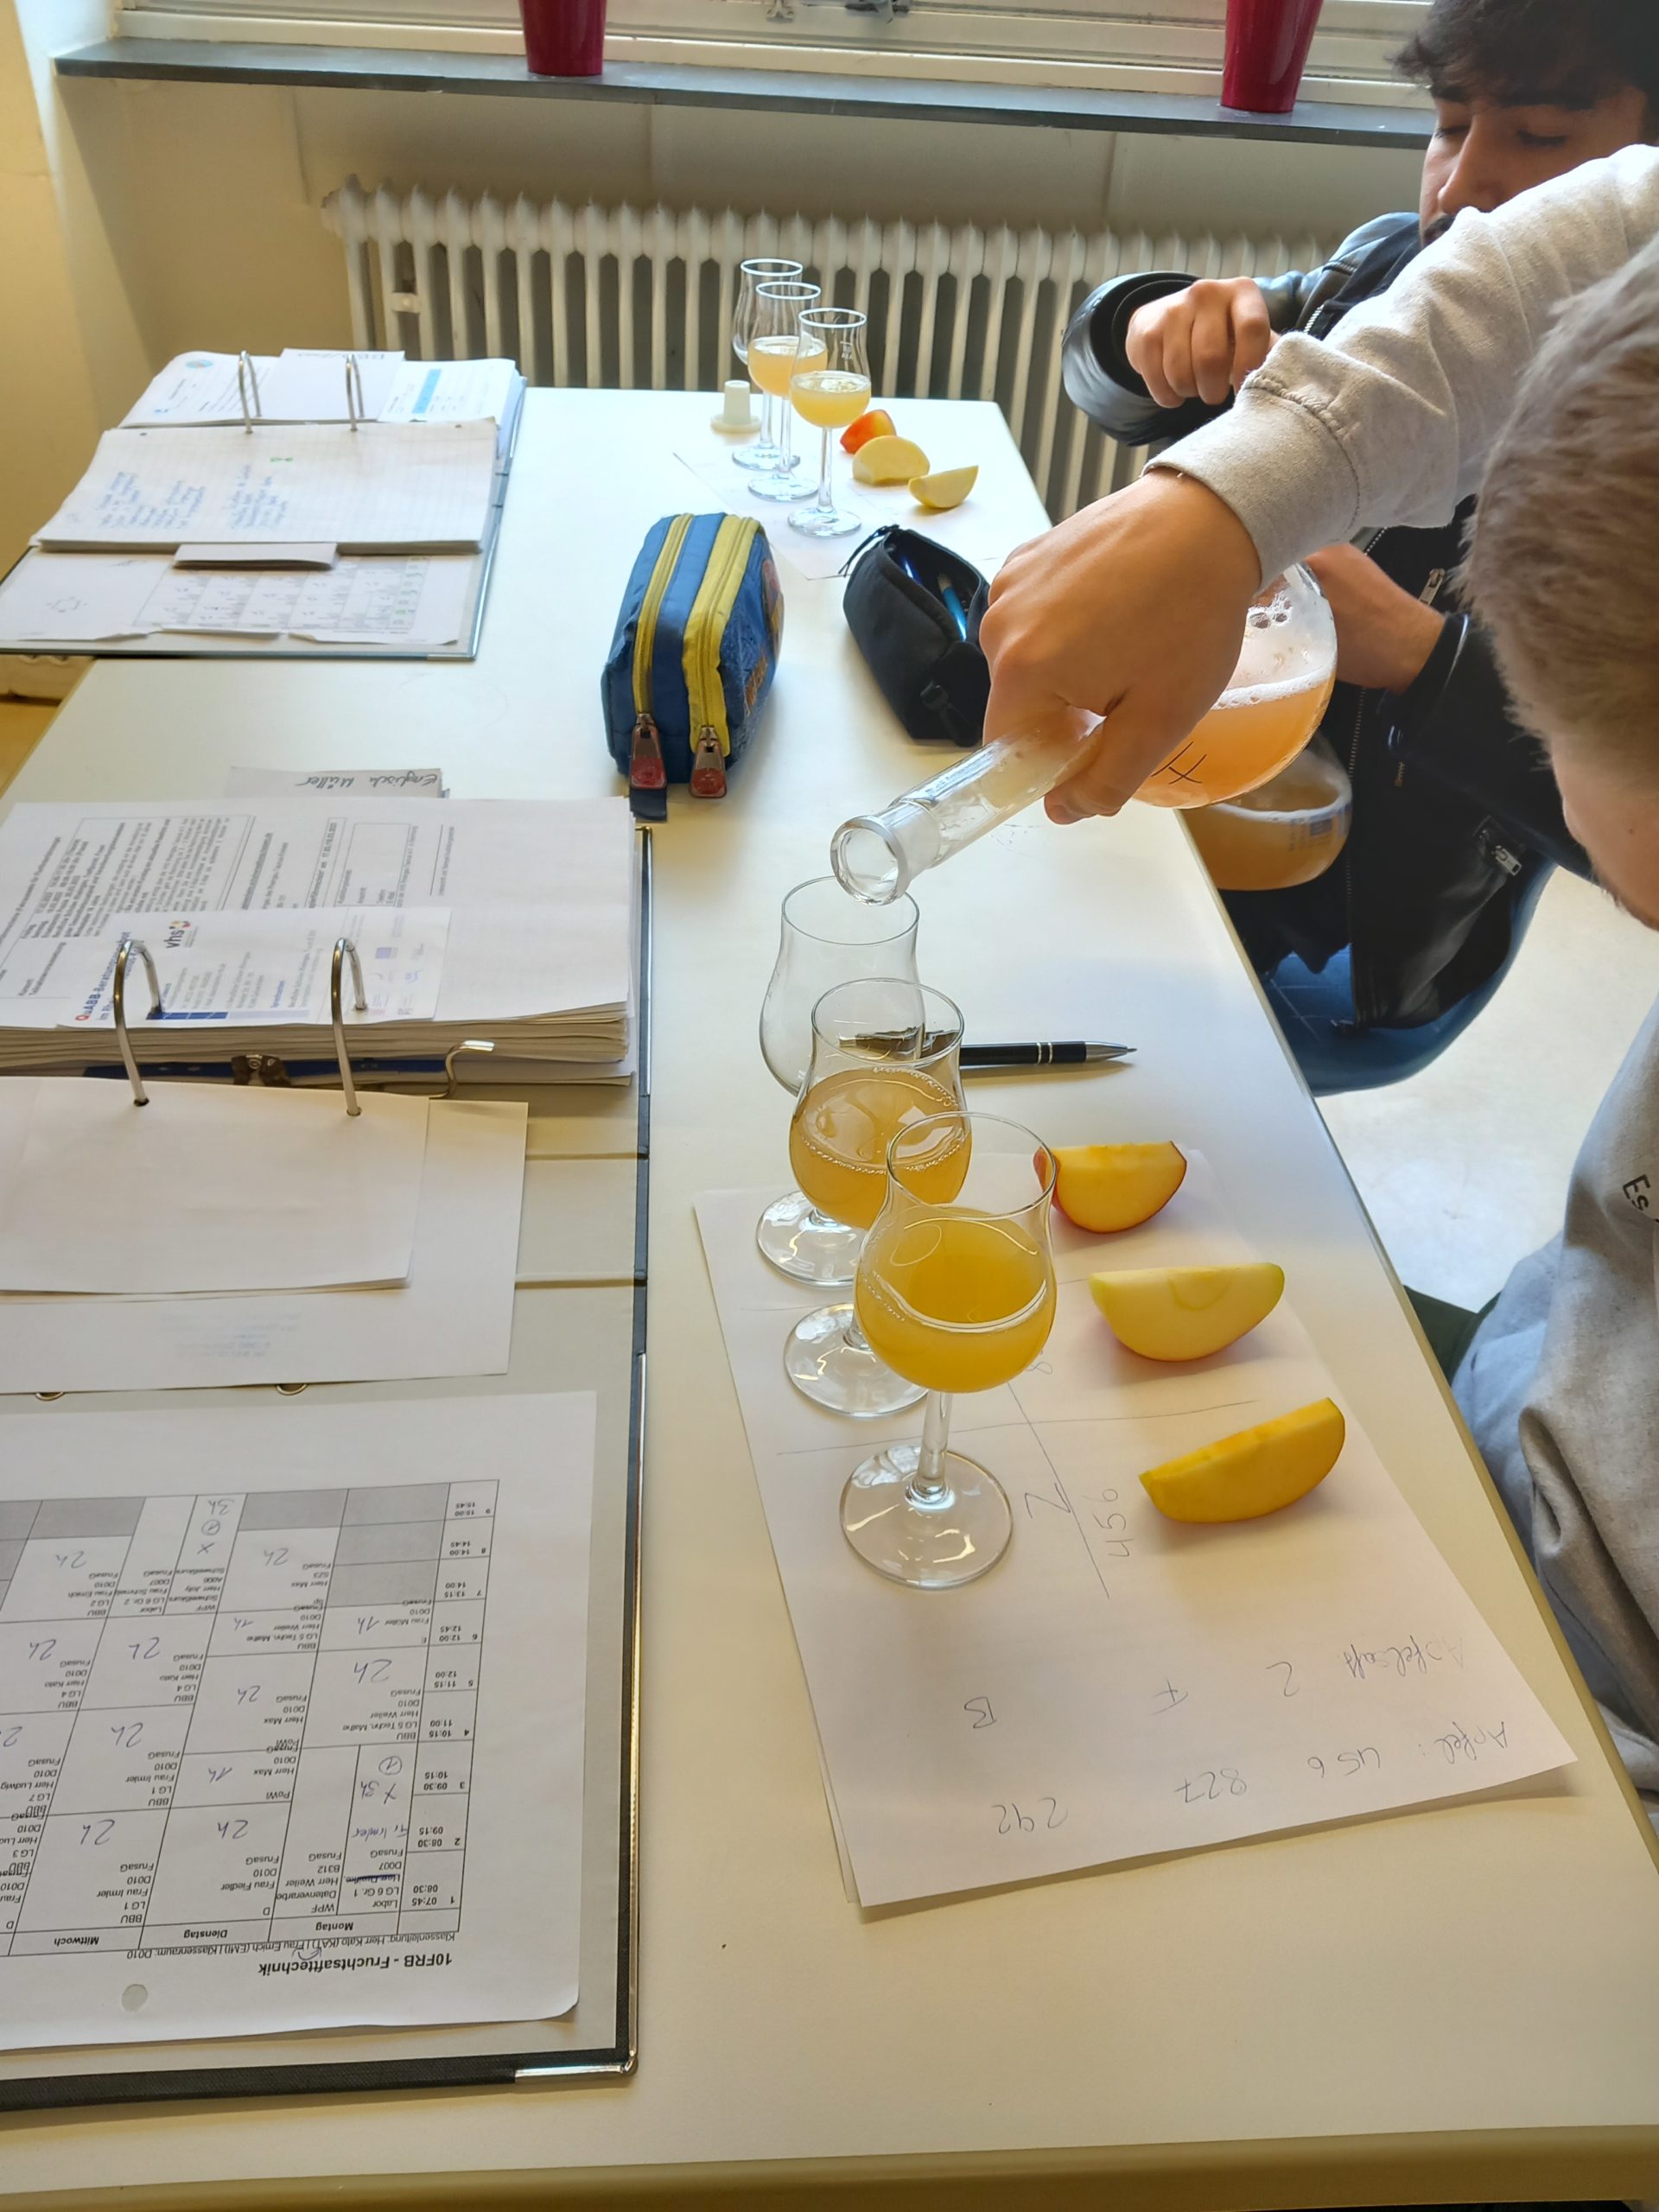 Kostprobe der selbst angefertigten Apfelsäfte im Unterricht.